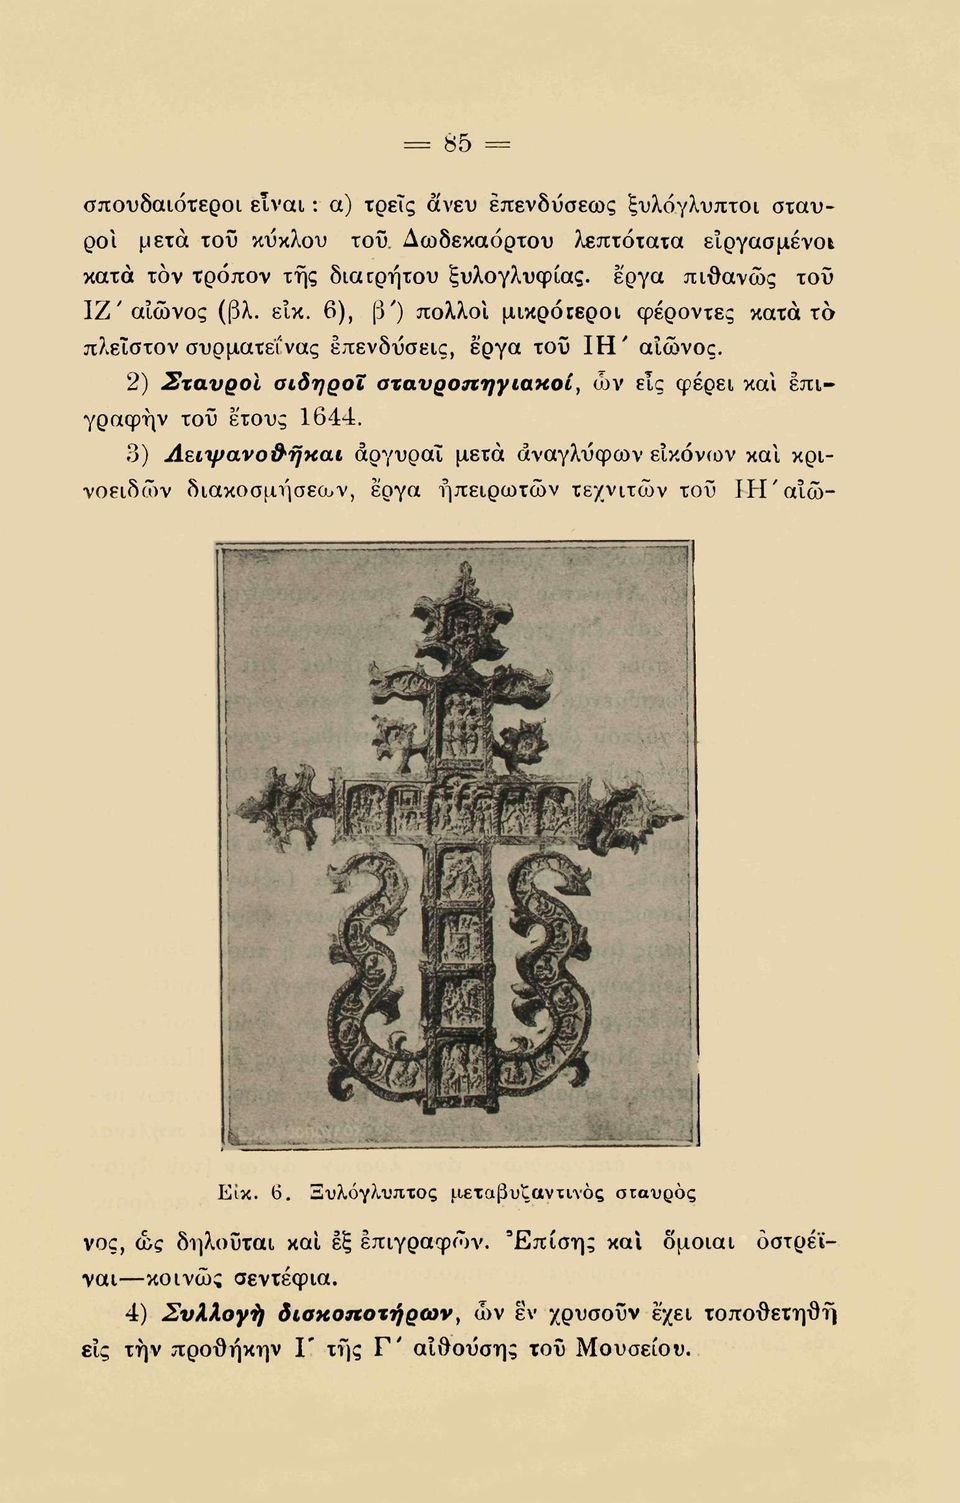 2) Σταυροί σίδηροι σταυροπηγιακοί, ών εις φέρει και επιγραφήν τοϋ έτους 1644.